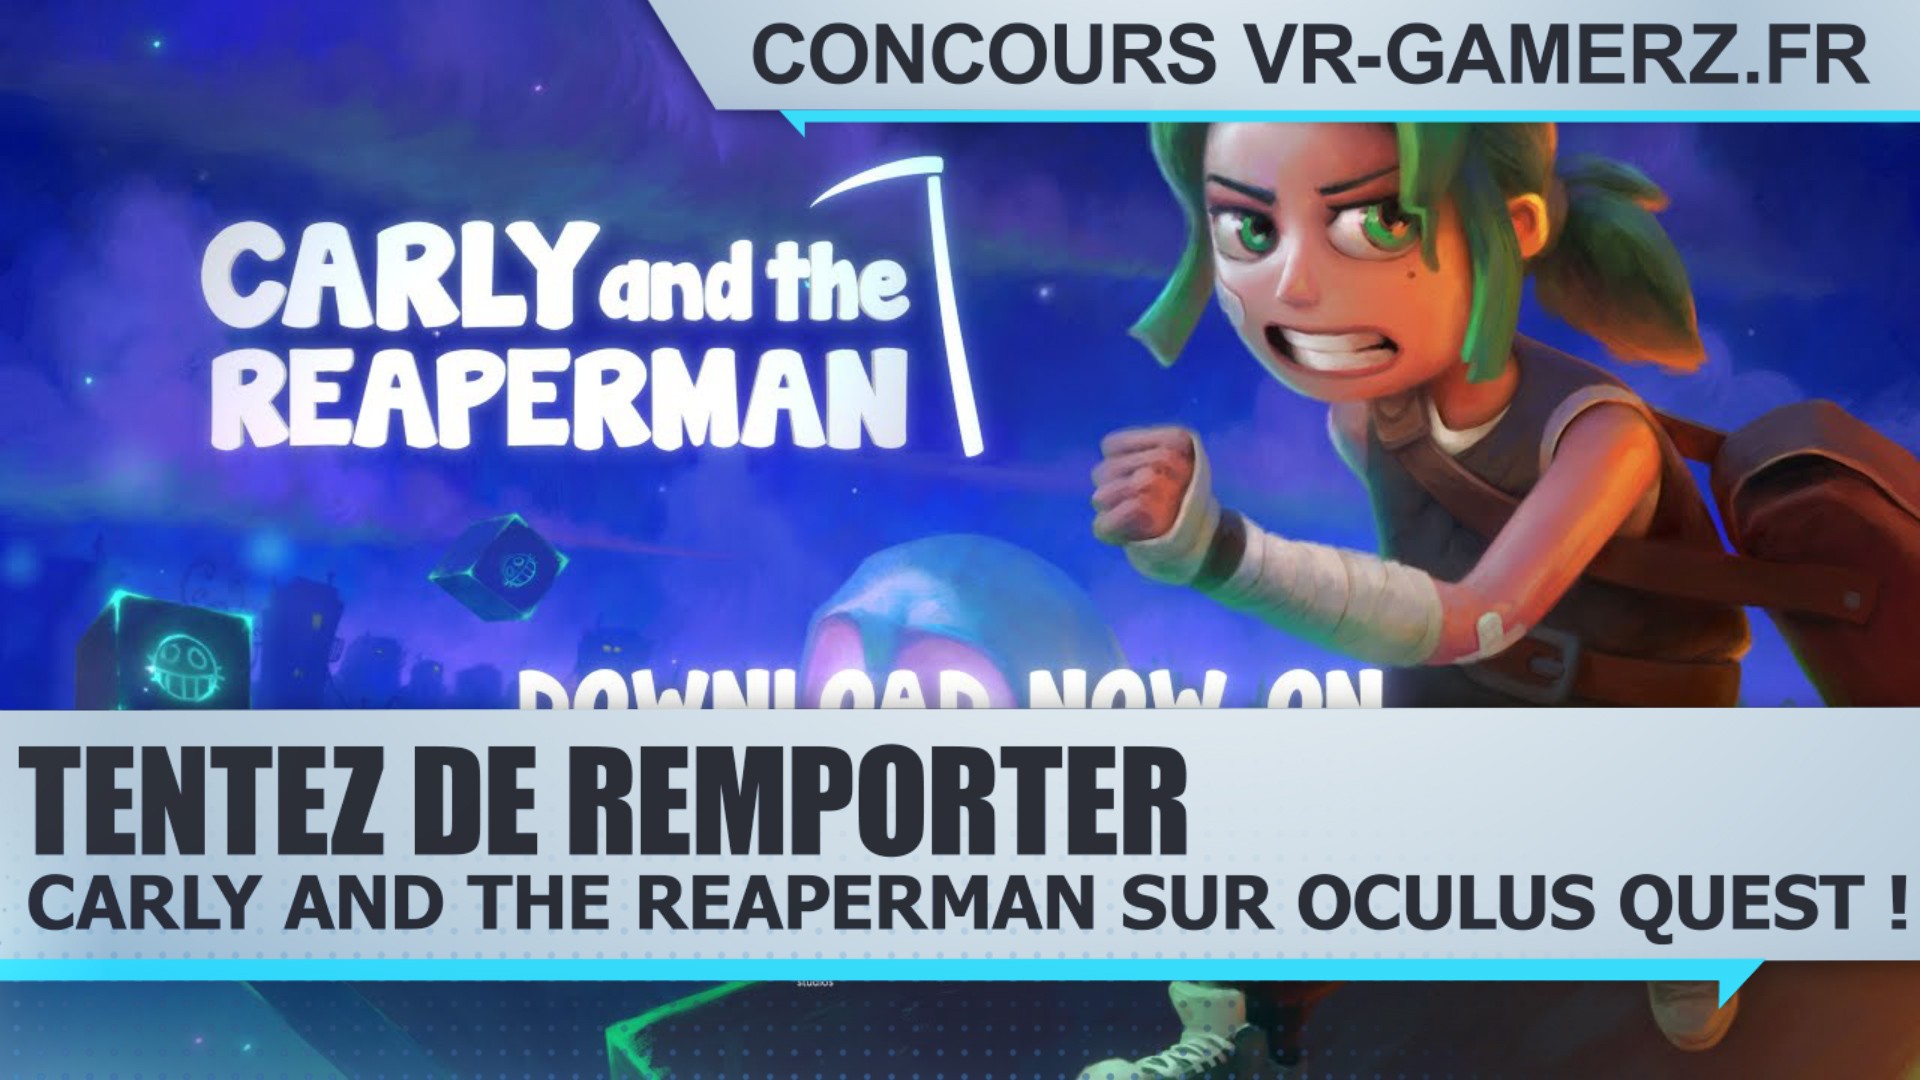 Résultat du Concours : Tentez de remporter Carly and the reaperman sur Oculus quest !